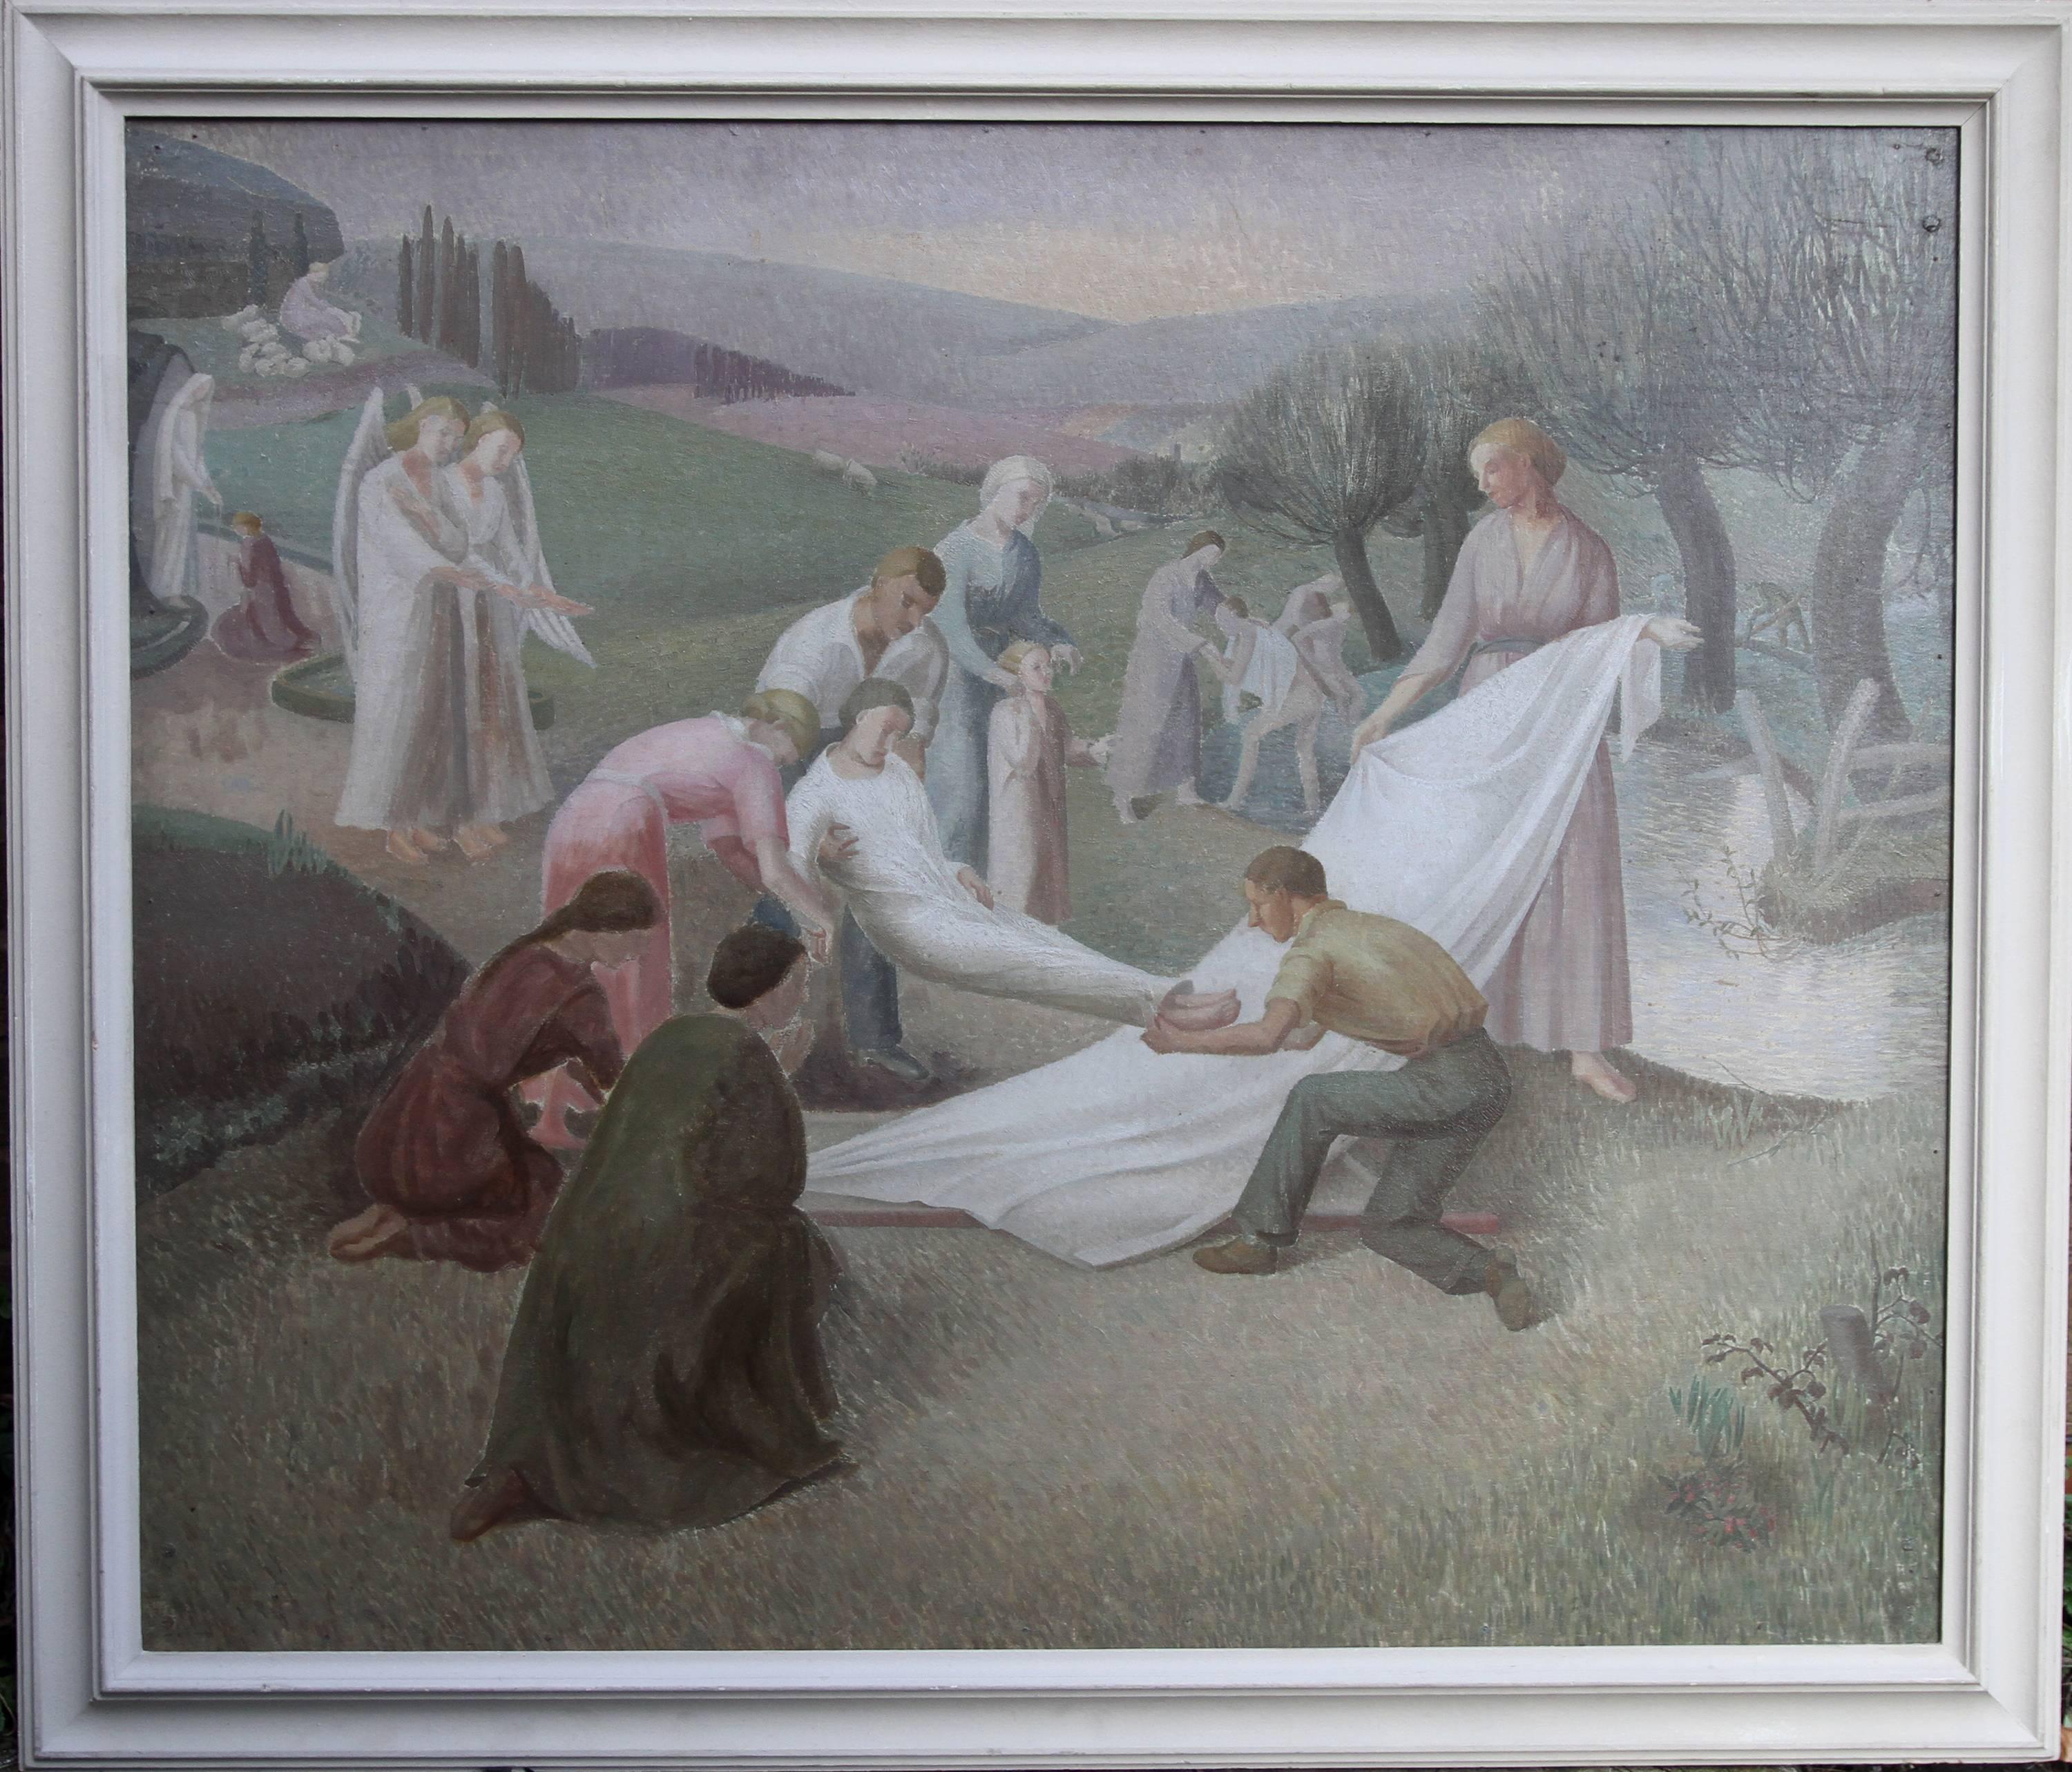 The Entombment - British art 30's oil painting religious landscape Jesus angels